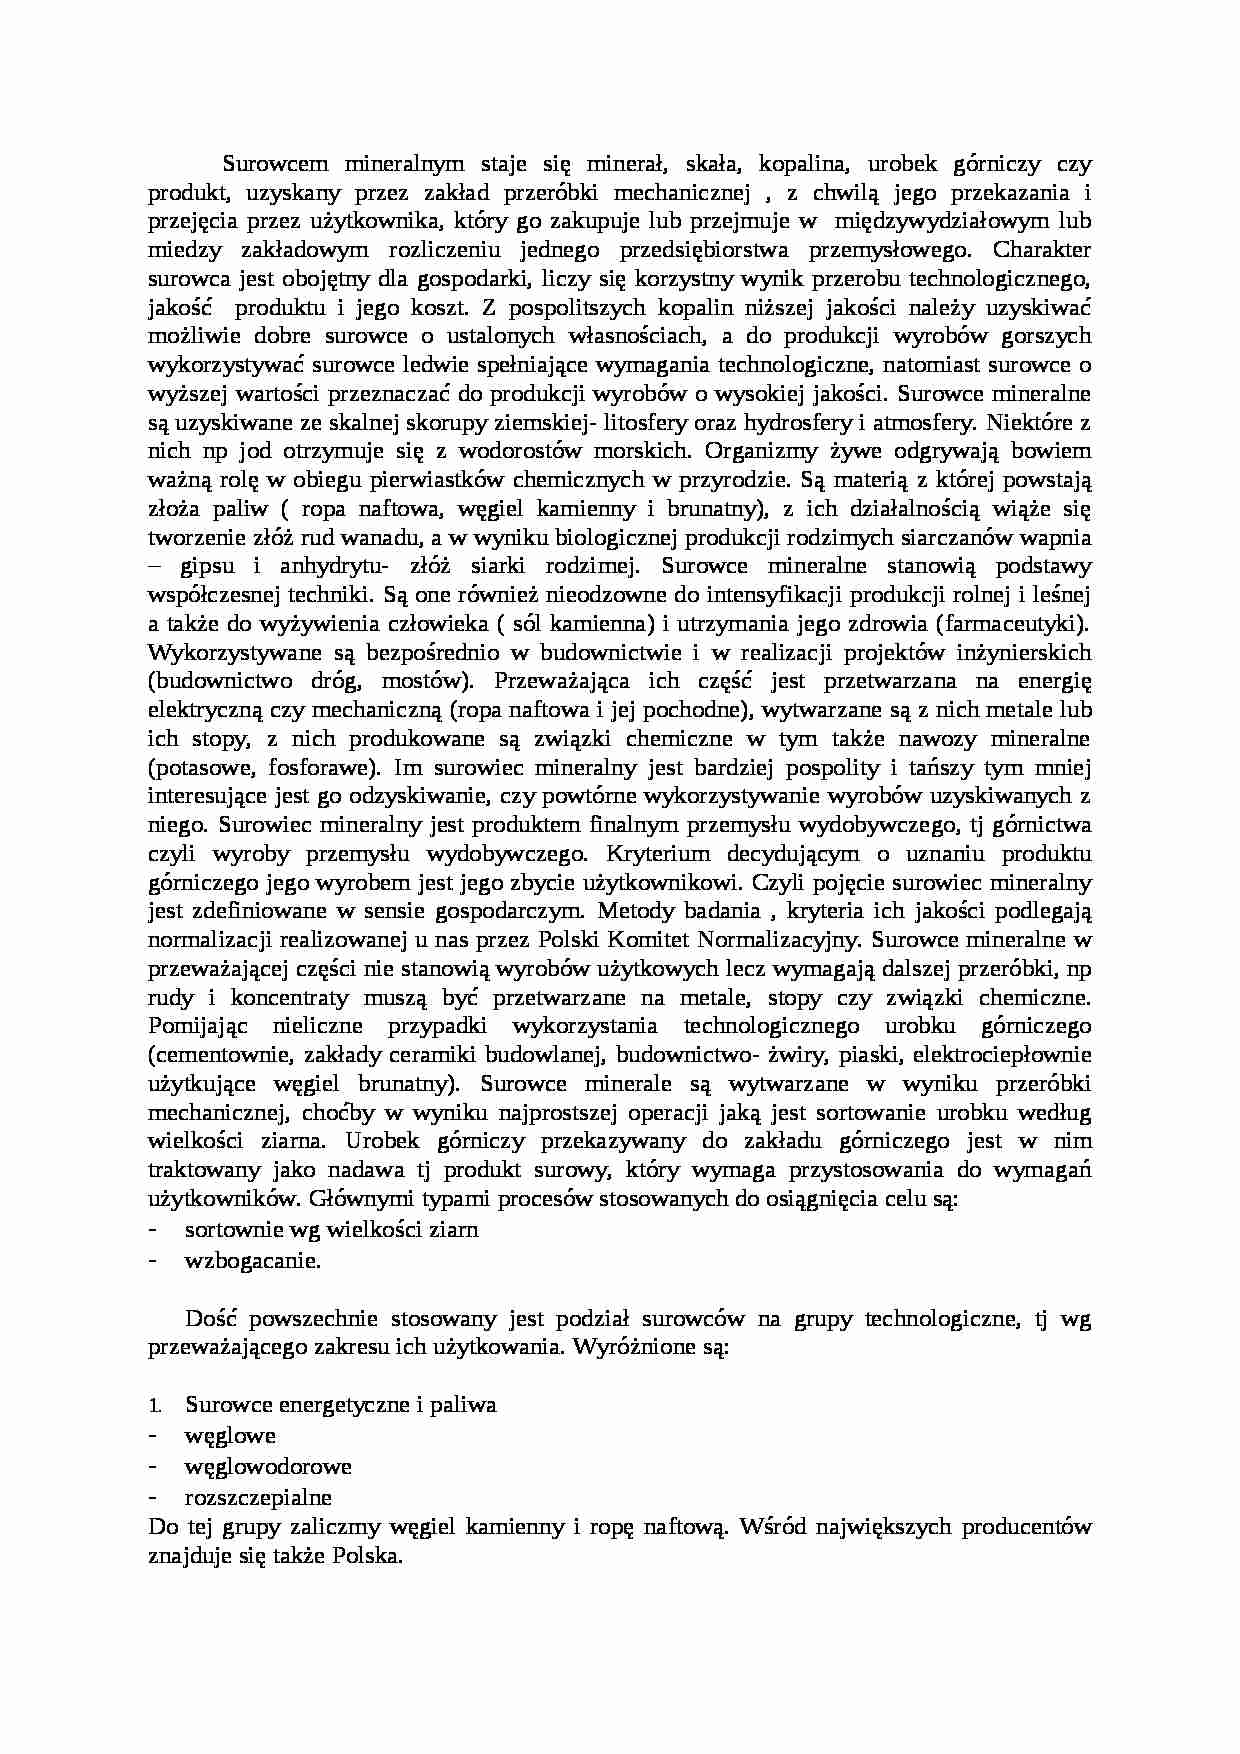 Baza i rynek surowców mineralnych w Polsce-opracowanie - strona 1